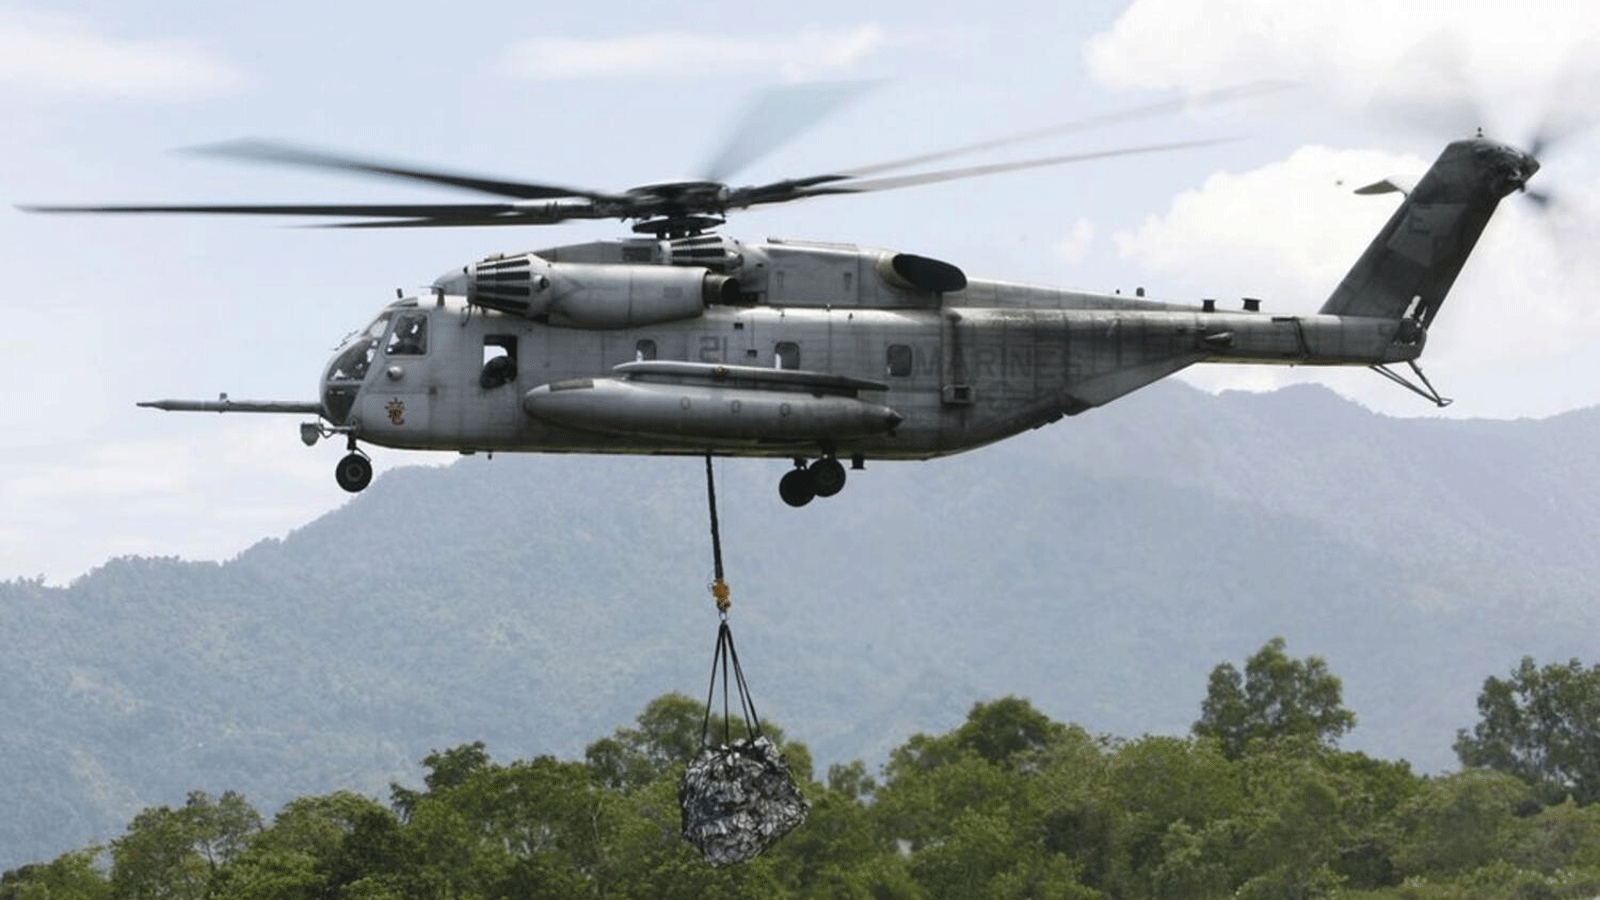  خدمة الإنقاذ في جبال الألب تقول إن البحث عن طائرة هليكوبتر اختفت في إيطاليا وعلى متنها سبعة أشخاص تكثفت الجمعة بعد تحسن الأحوال الجوية.